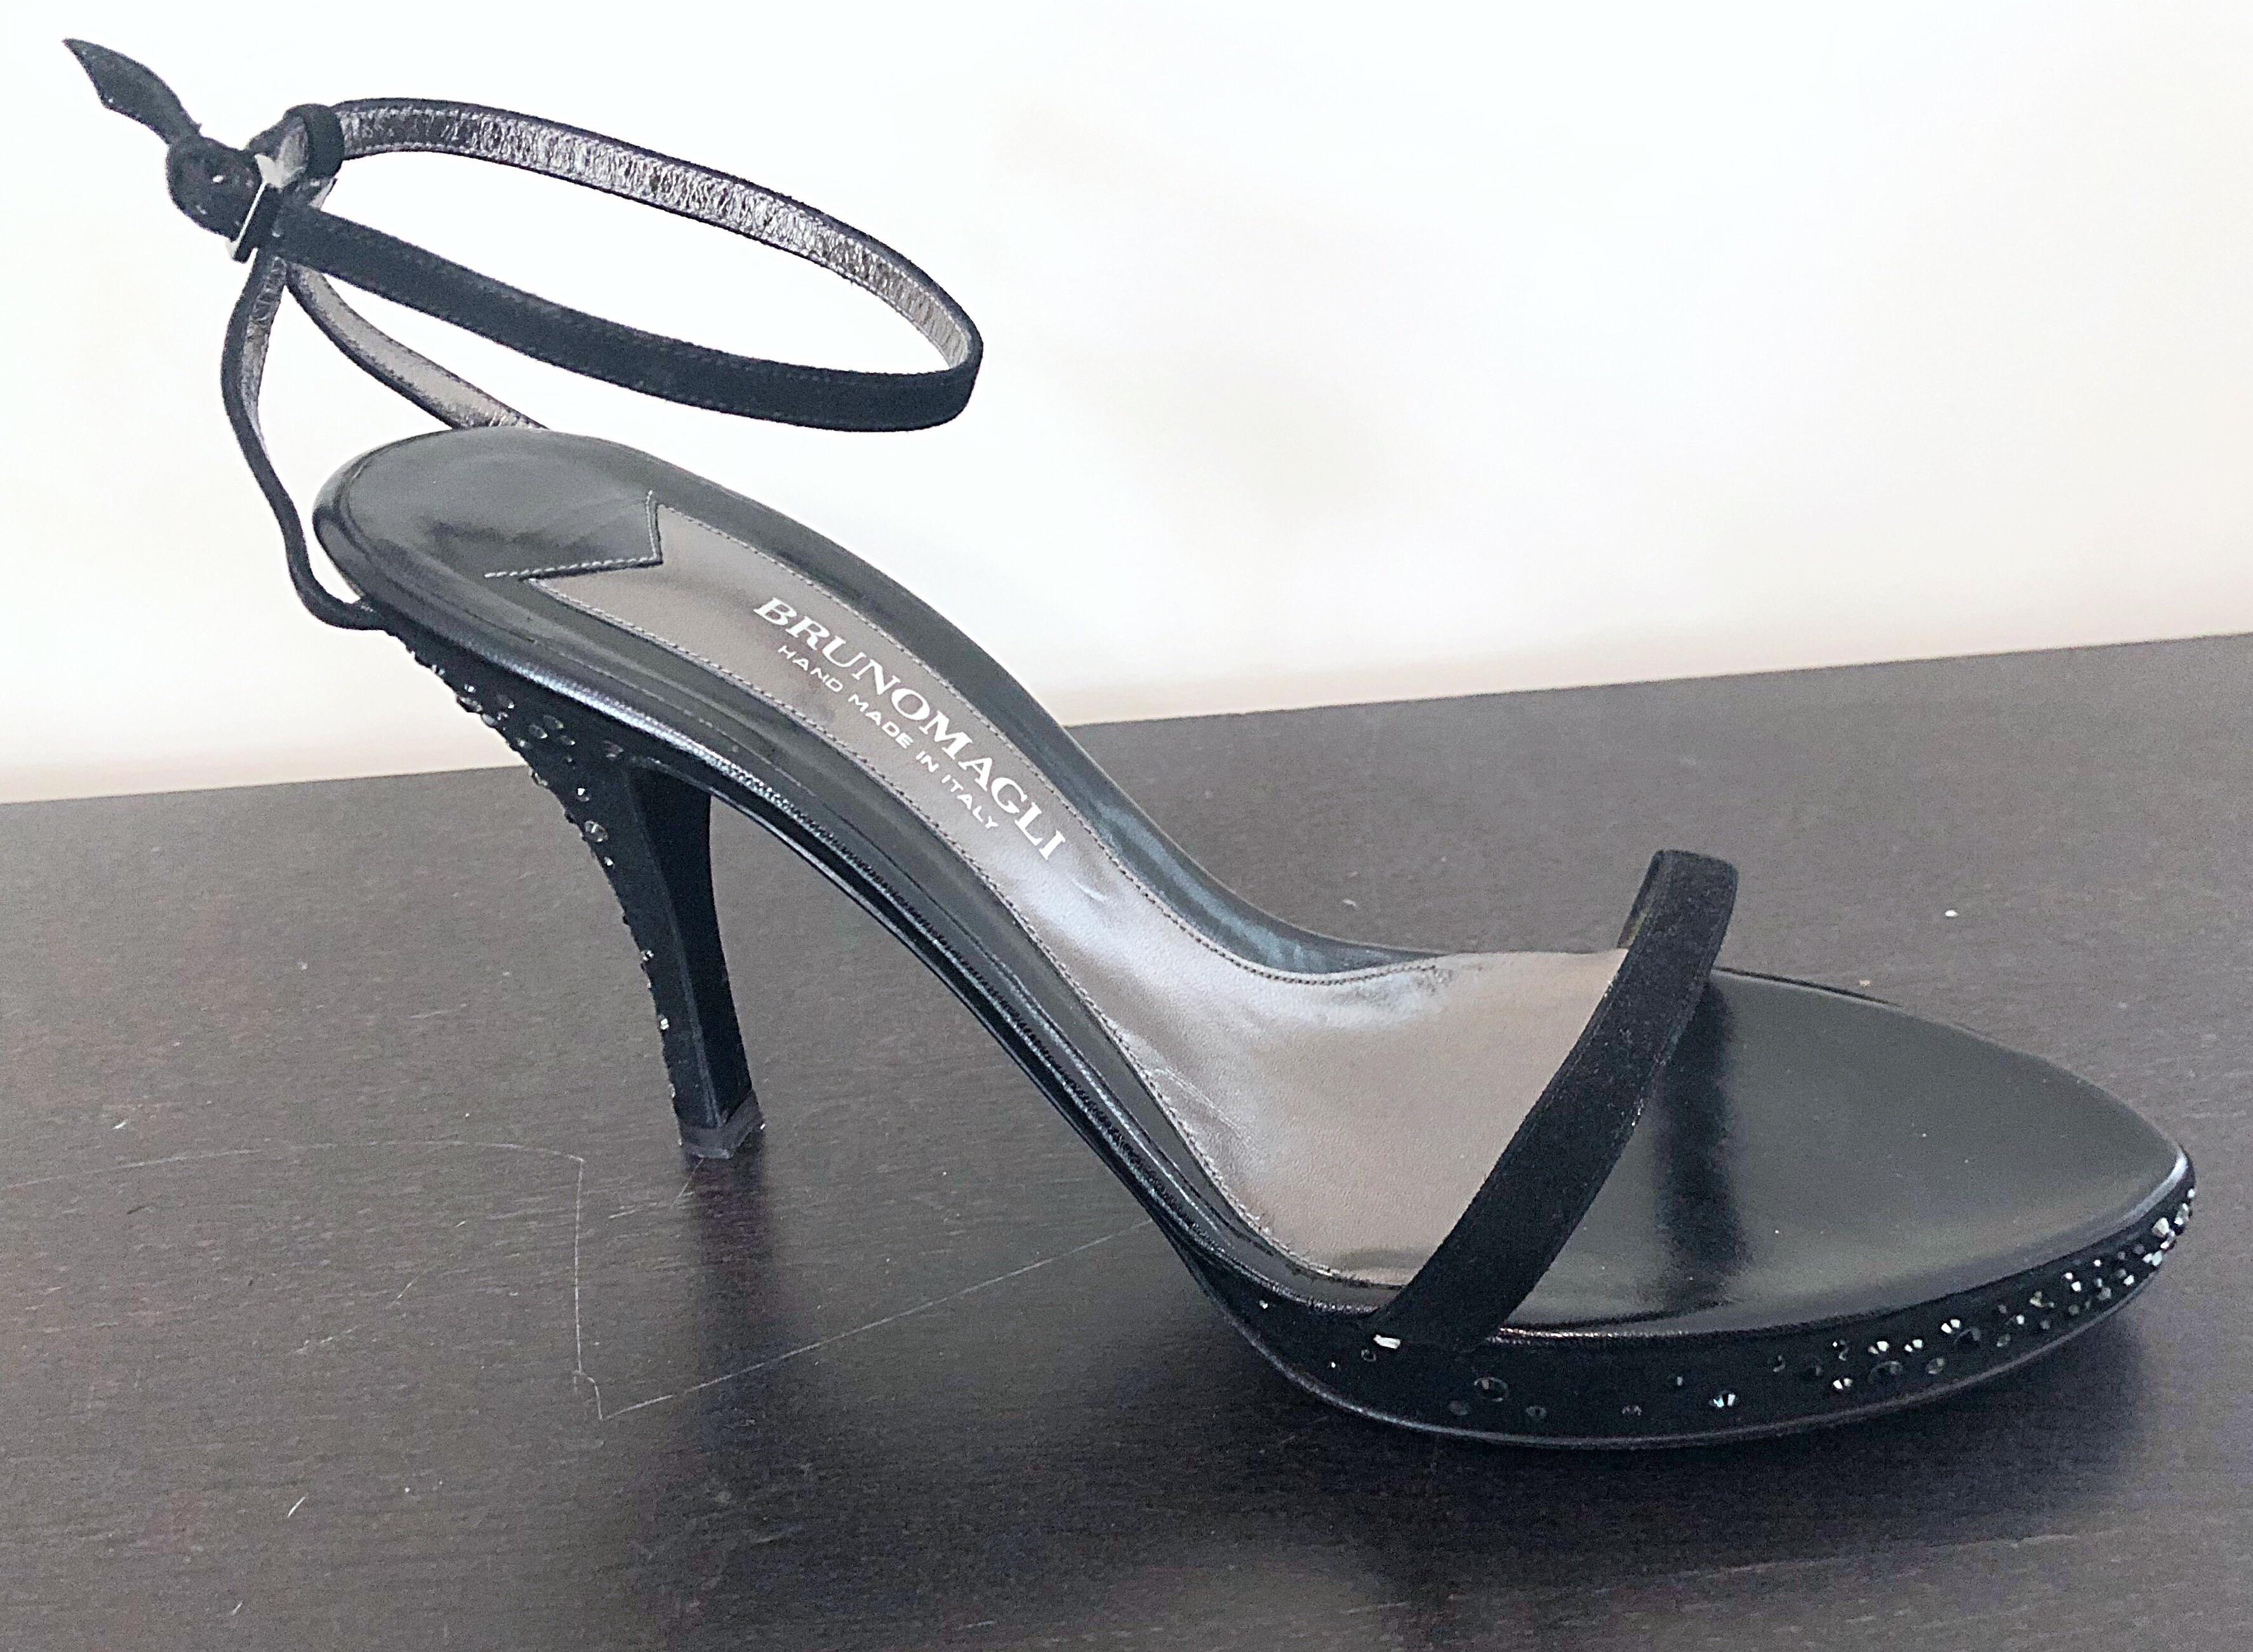 Seltene Vintage 90s nie getragen BRUNO MAGLI Größe 42 / US 12 schwarz Seide Strass verkrustete High-Heels! Super schwer zu finden Größe 42 (US 12) ! Glänzender silberner und schwarzer Strass auf dem gesamten hohen Absatz und der Außensohle des